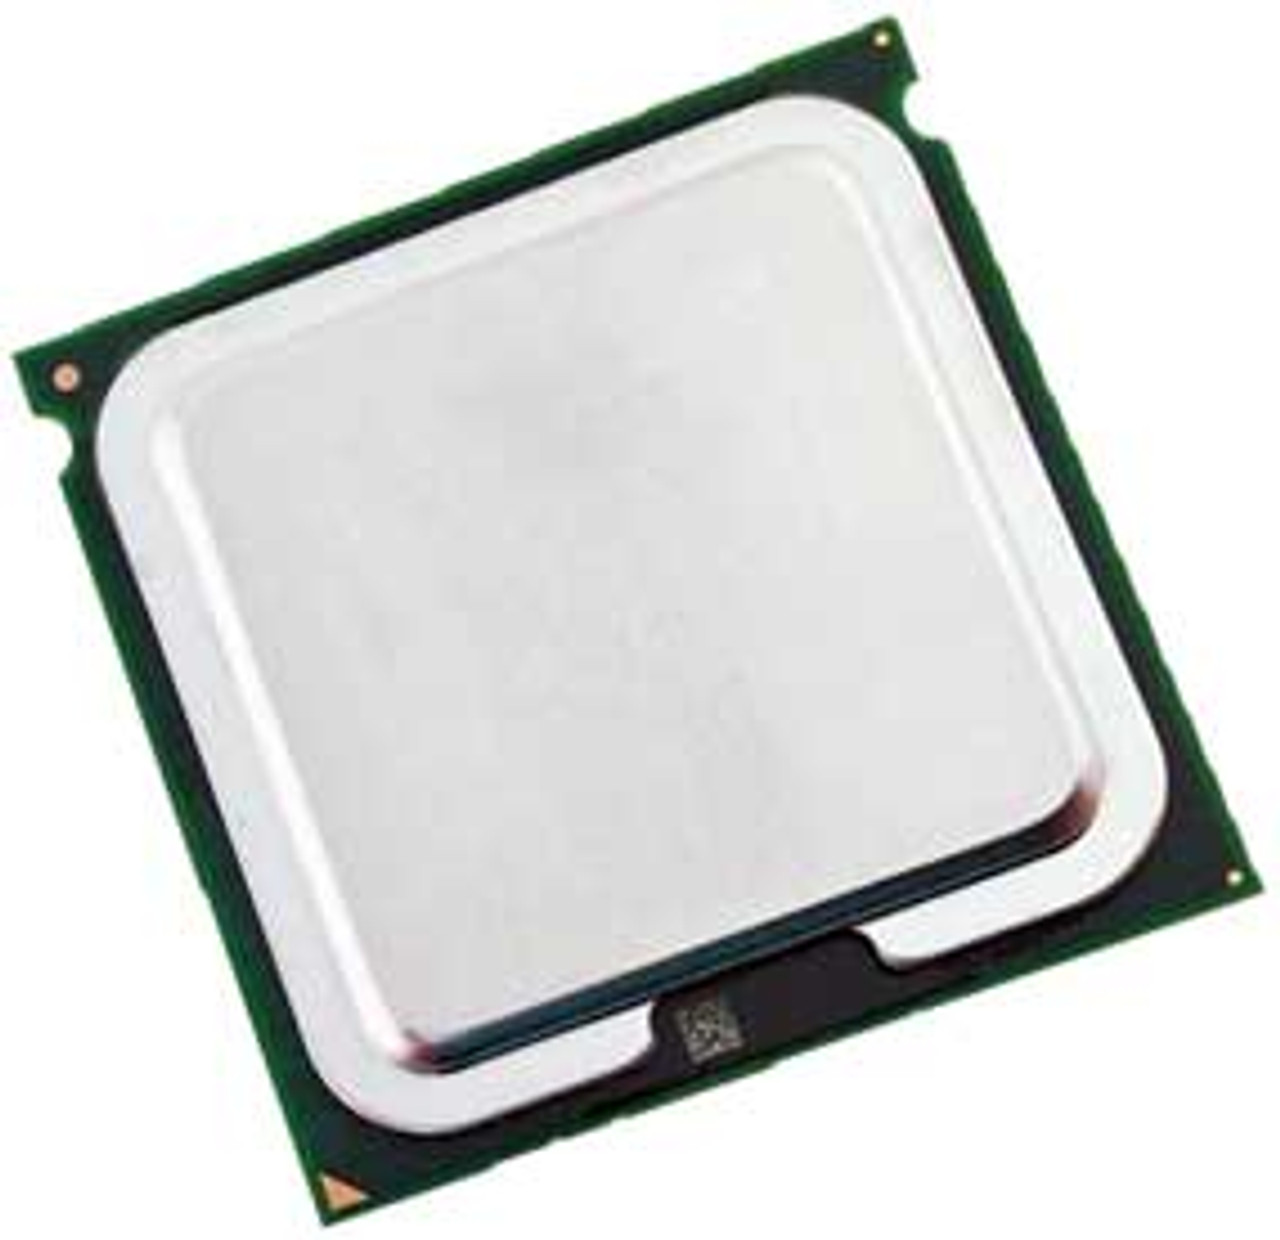 Intel BX80569Q9650 - 3.00Ghz 1333Mhz 12MB LGA775 Intel Core 2 Quad Q9650  Quad Core CPU Processor